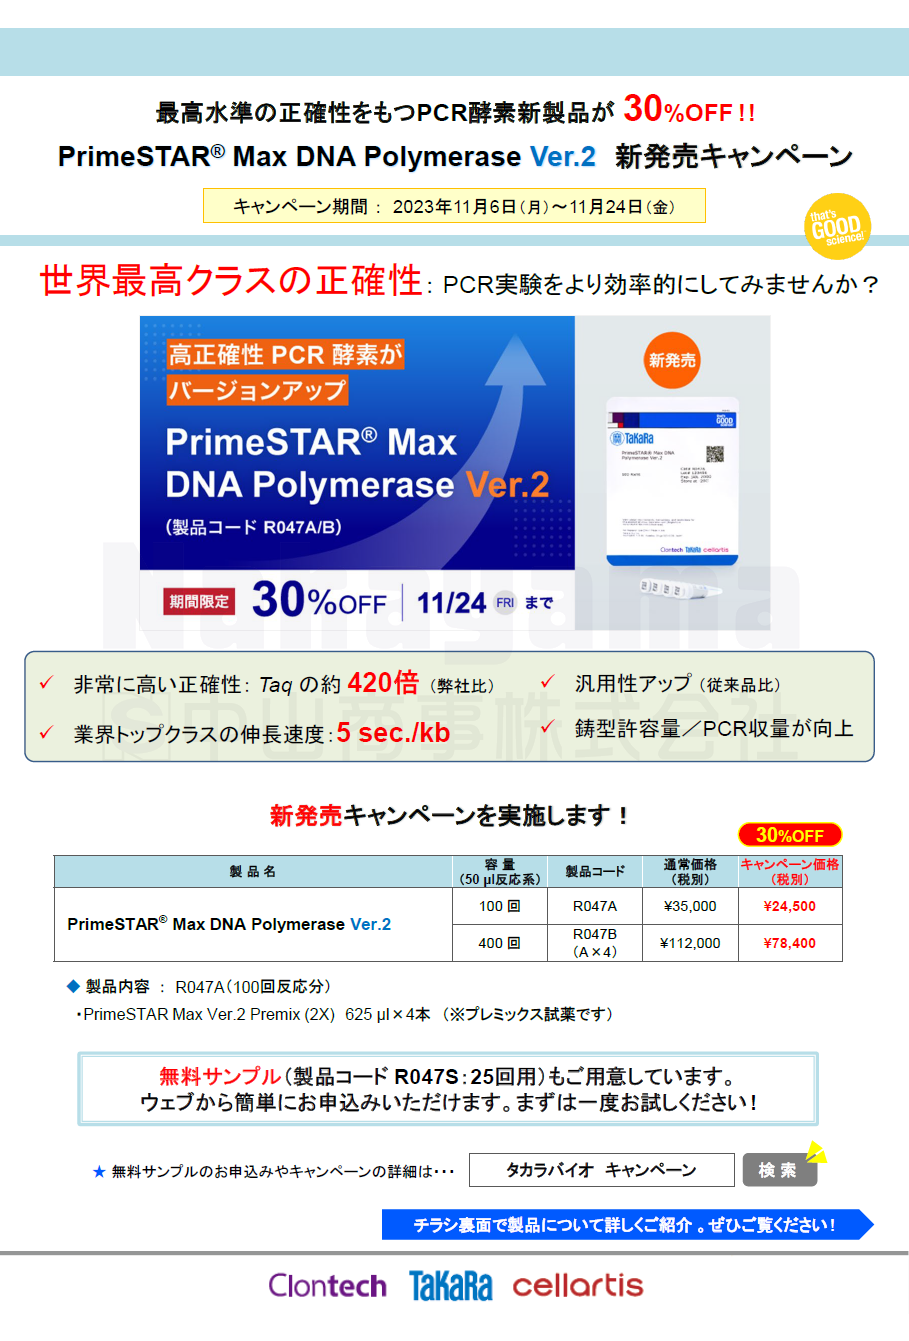 PrimeSTAR® Max DNA Polymerase Ver.2 debut campaign